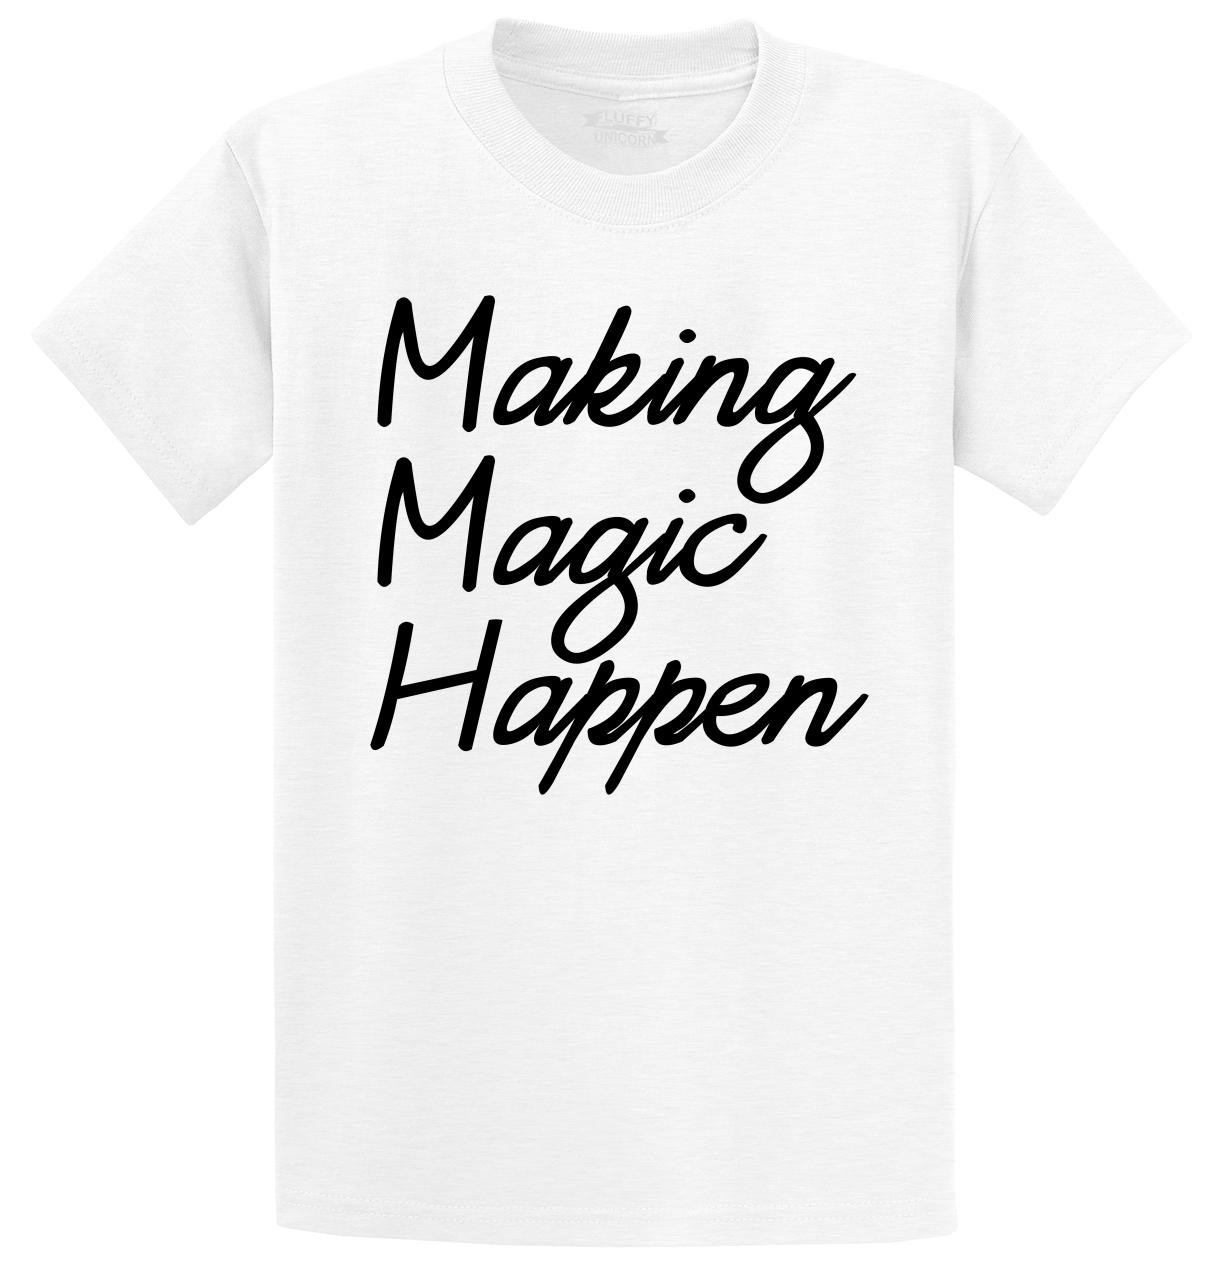 Making Magic Happen Mens And Womens Tee Shirts And Tank Tops